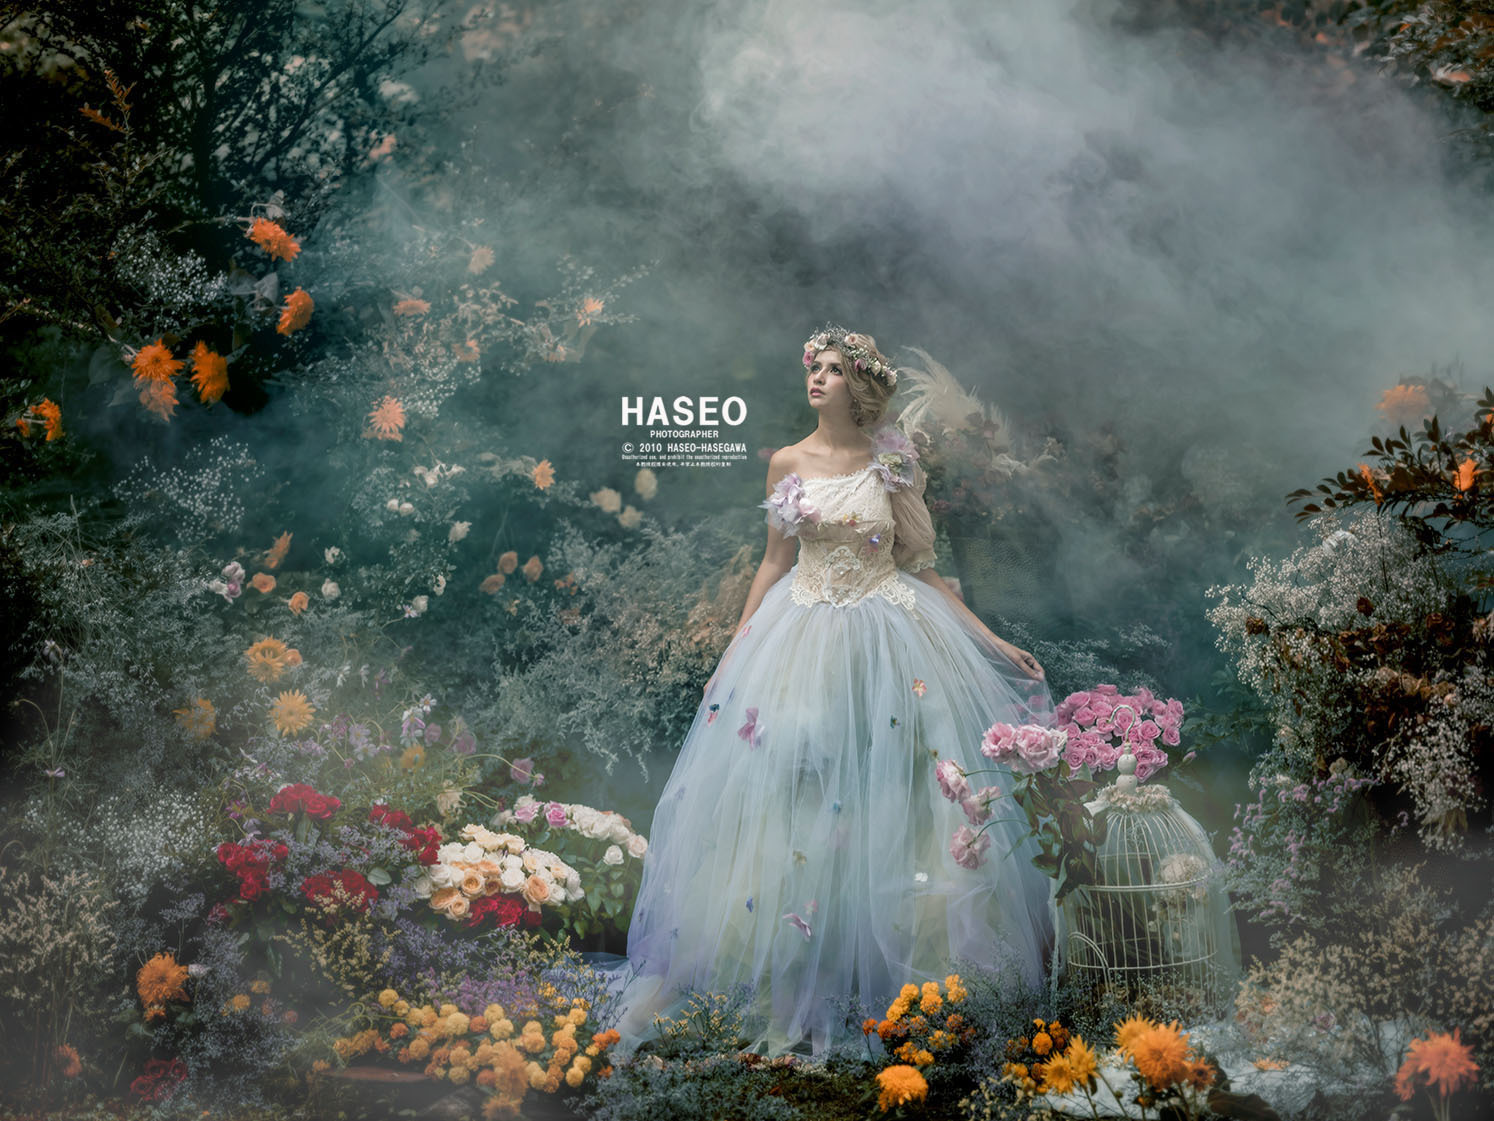 ダークファンタジーな作品を展示 Haseo写真展 美しい写真絵本の世界